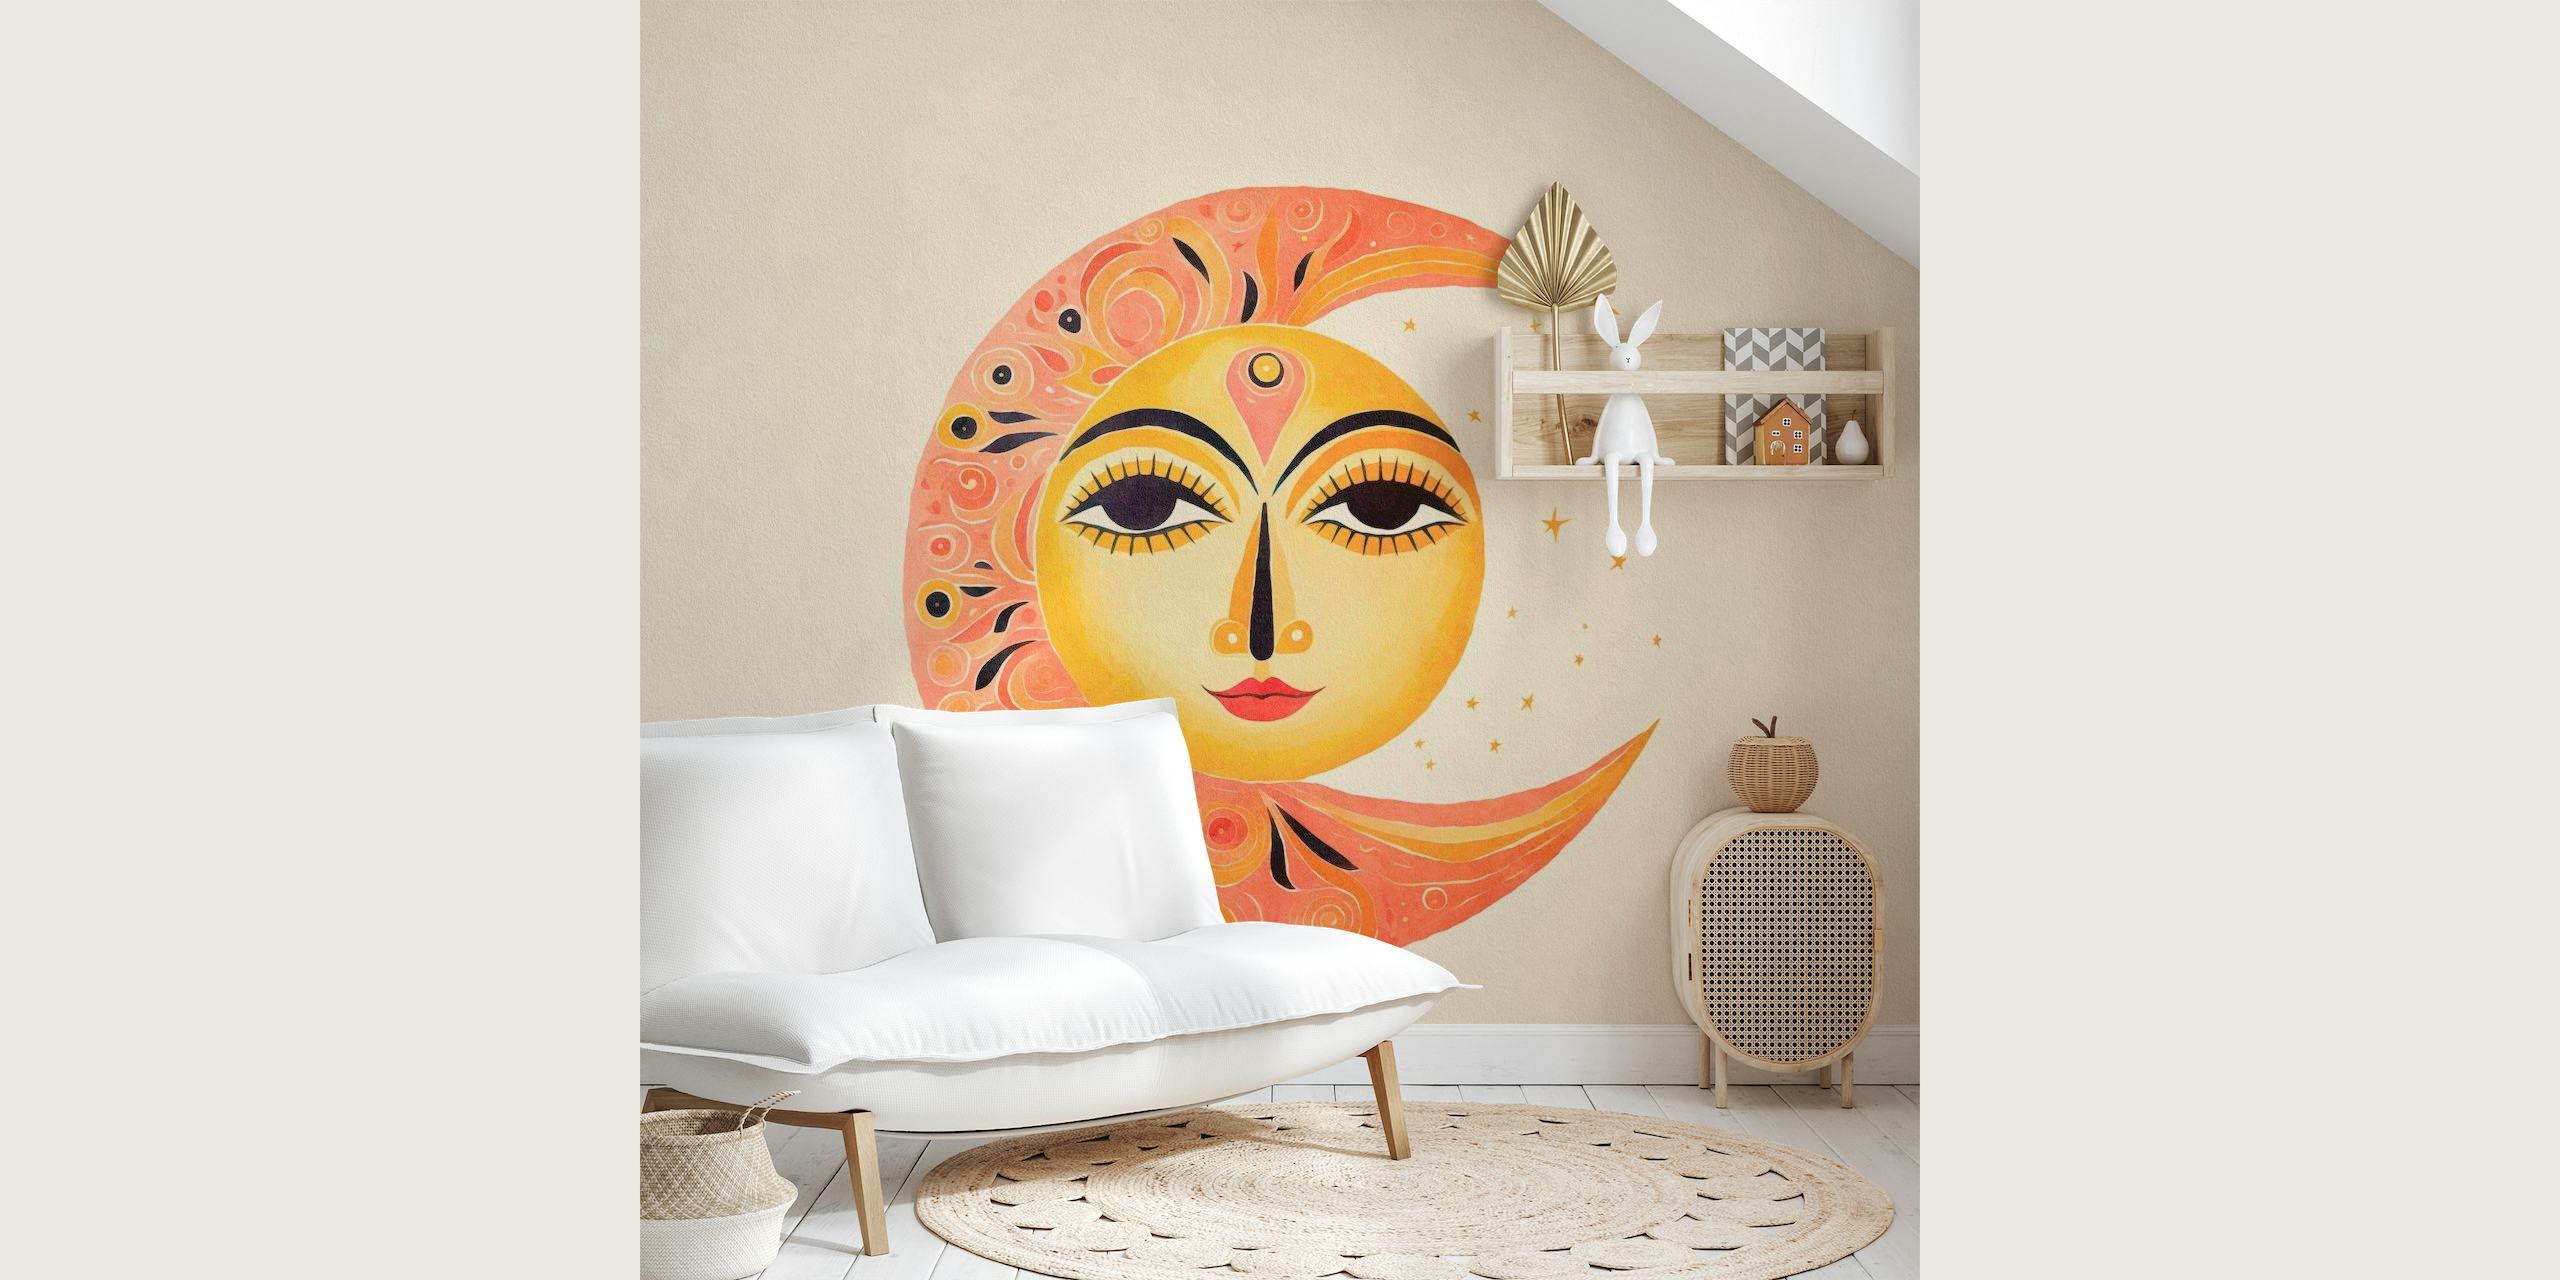 Speciellt solmånemålning med harmonisk sol- och månedesign